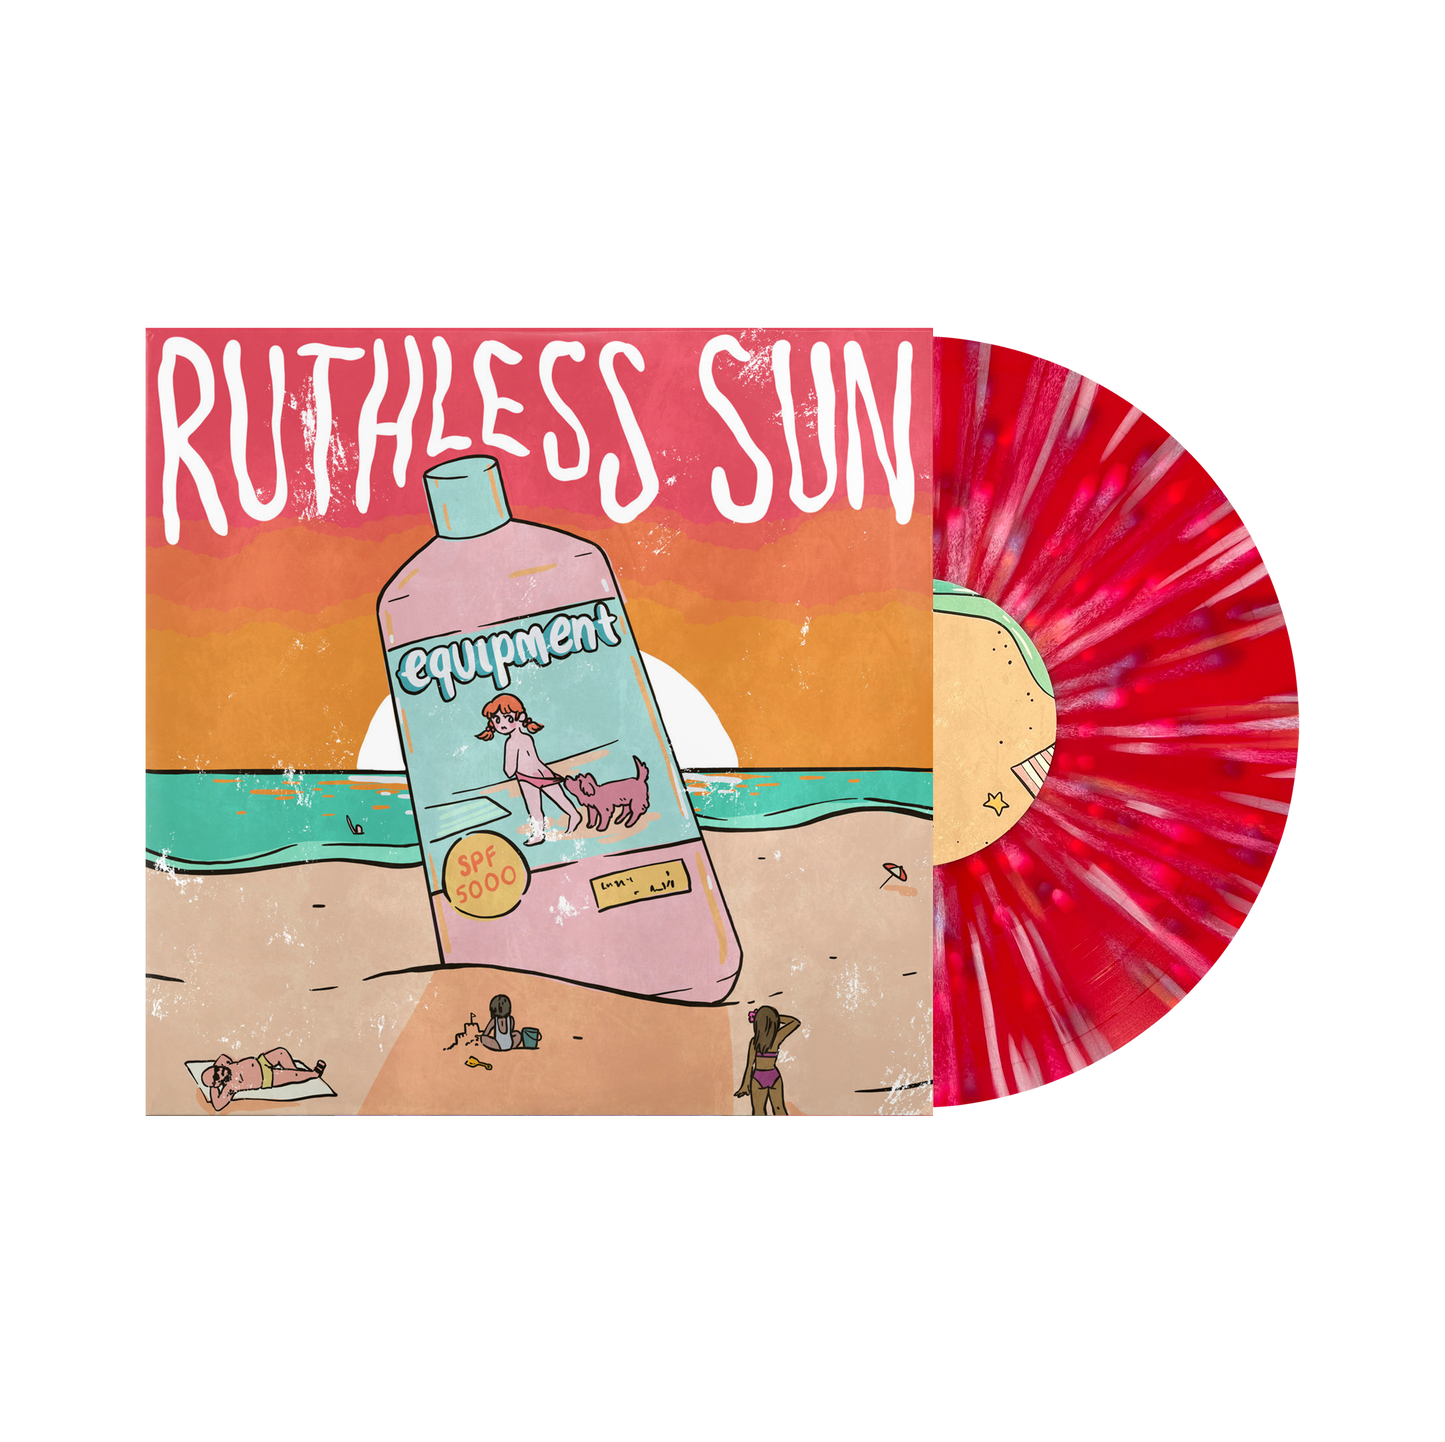 Equipment ‘Ruthless Sun’ LP